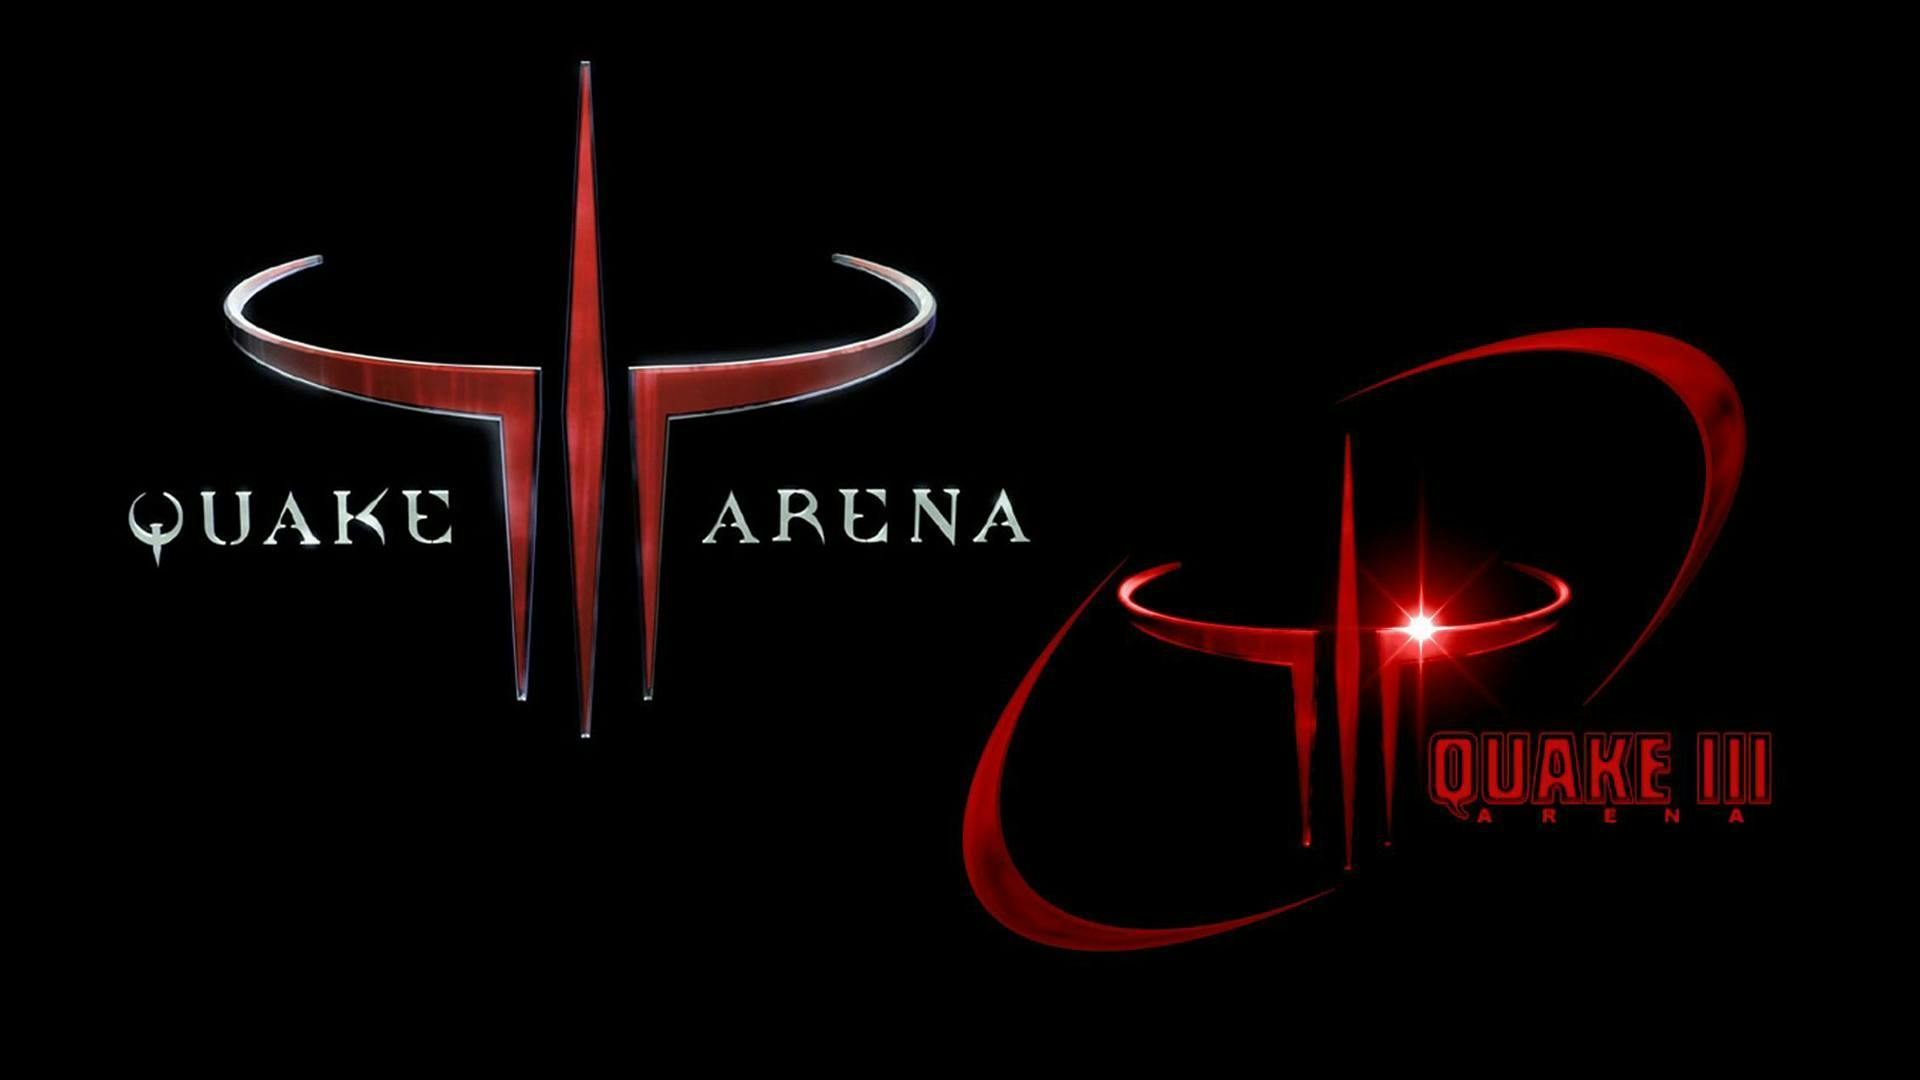 Quake 3 Arena logo. Quake 3 Team Arena. Quake III Arena. Quake III Team Arena. Quake team arena